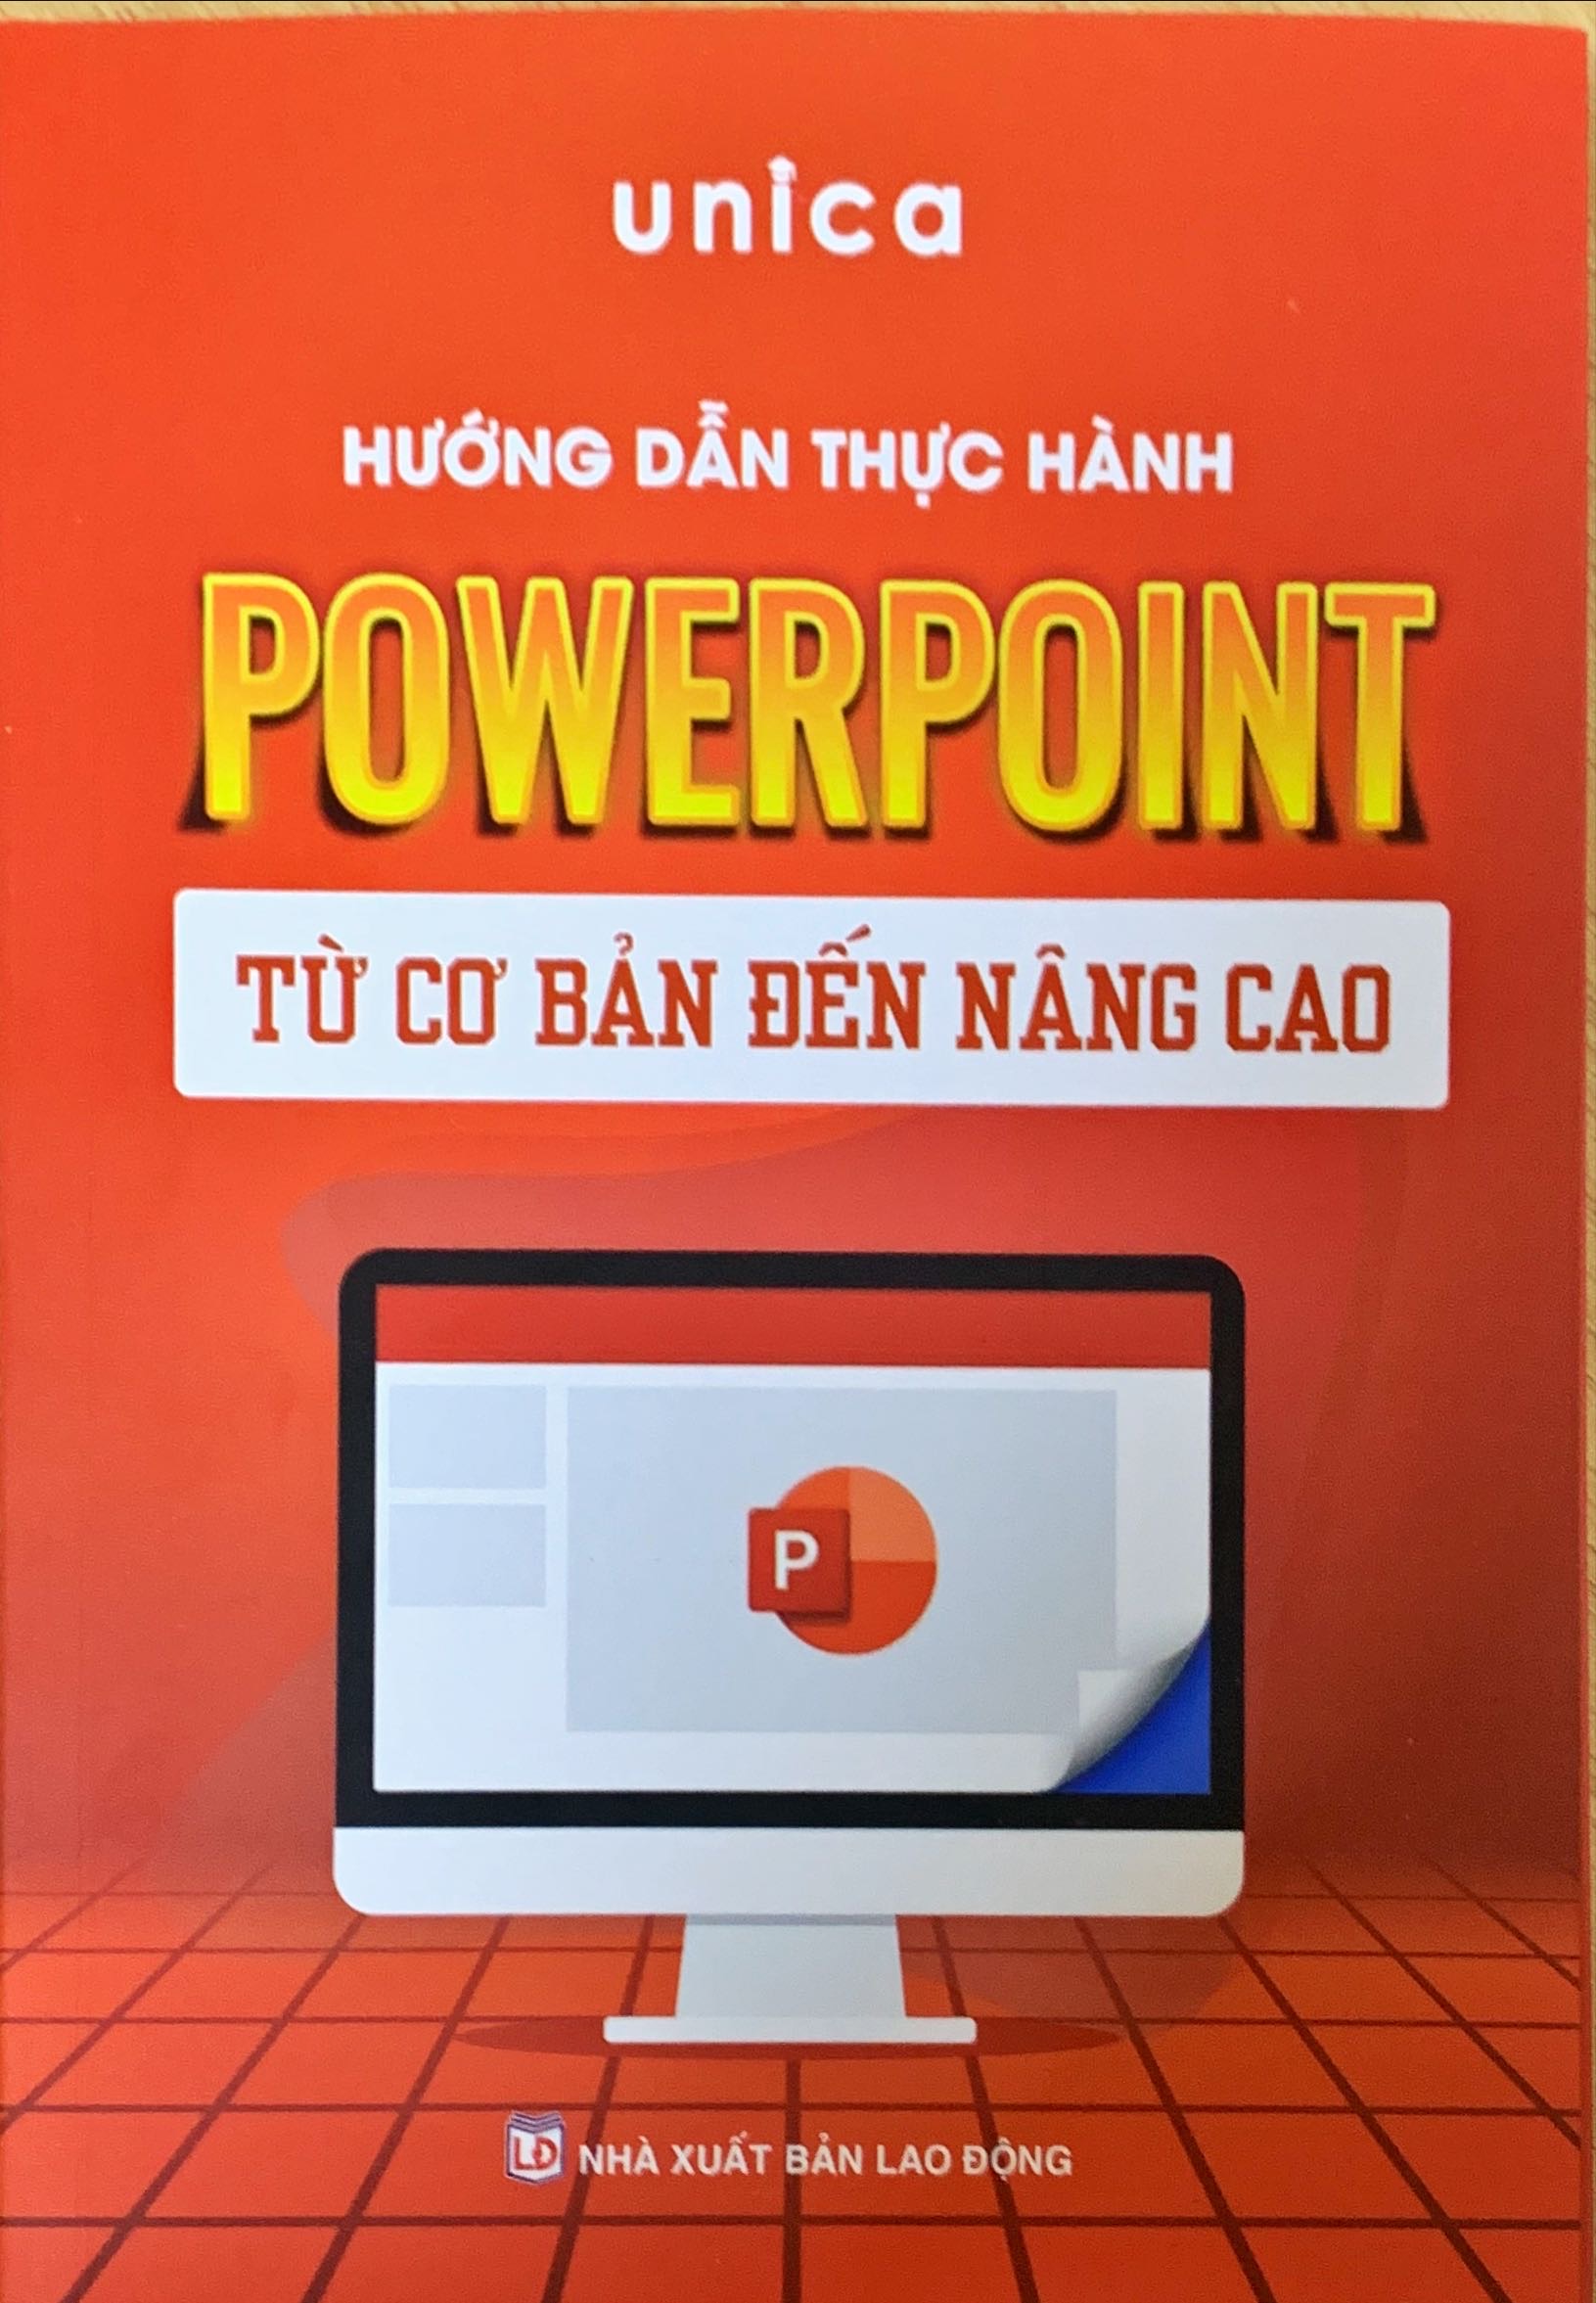 Combo 2 sách Word - Powerpoint Tin học văn phòng Unica, Hướng dẫn thực hành từ cơ bản đến nâng cao, in màu chi tiết, TẶNG video bài giảng